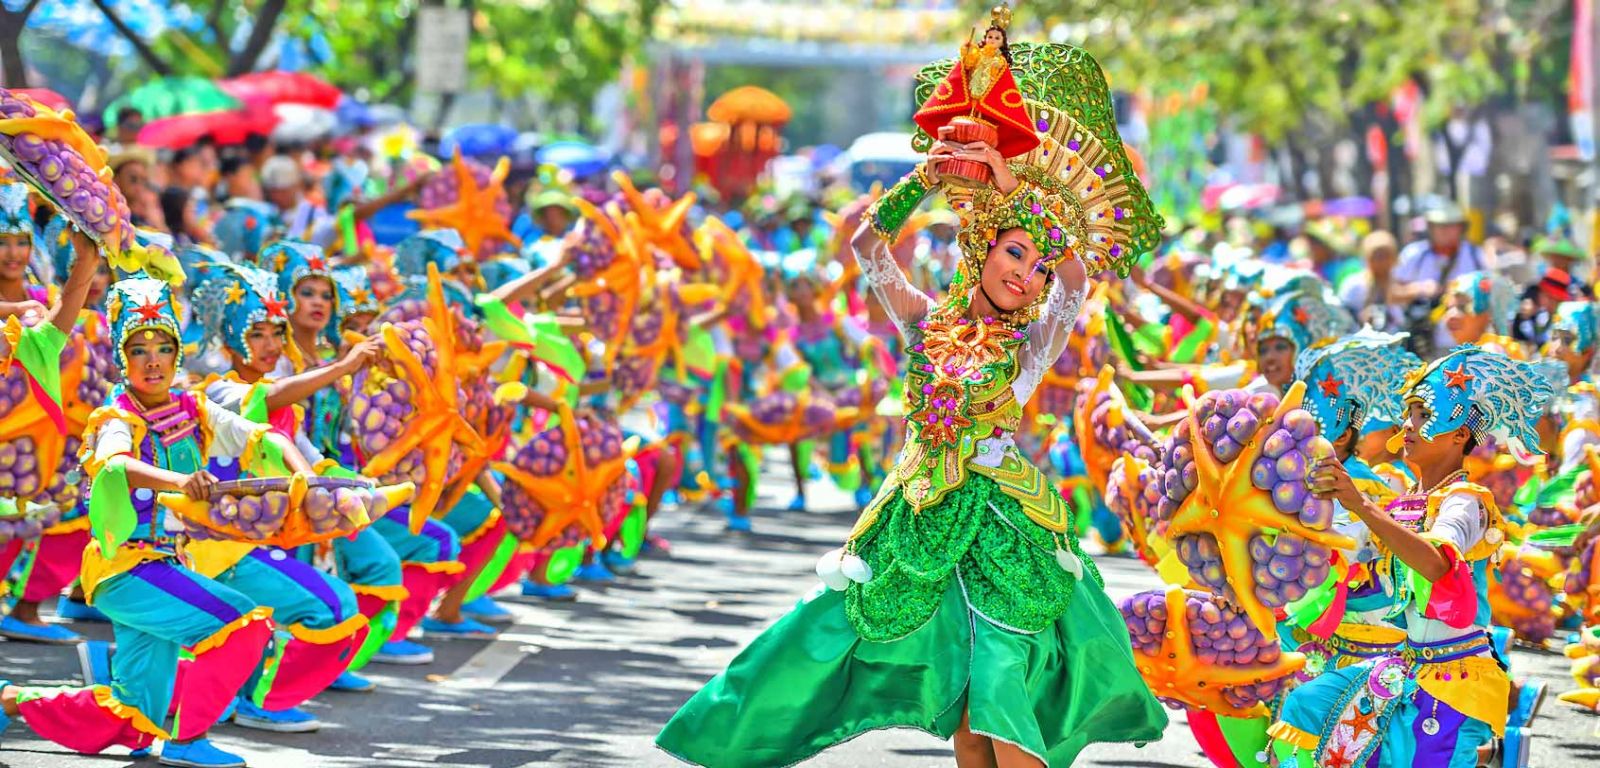 Hòa mình vào niềm hạnh phúc trong lễ hội Masskara ở Philippines